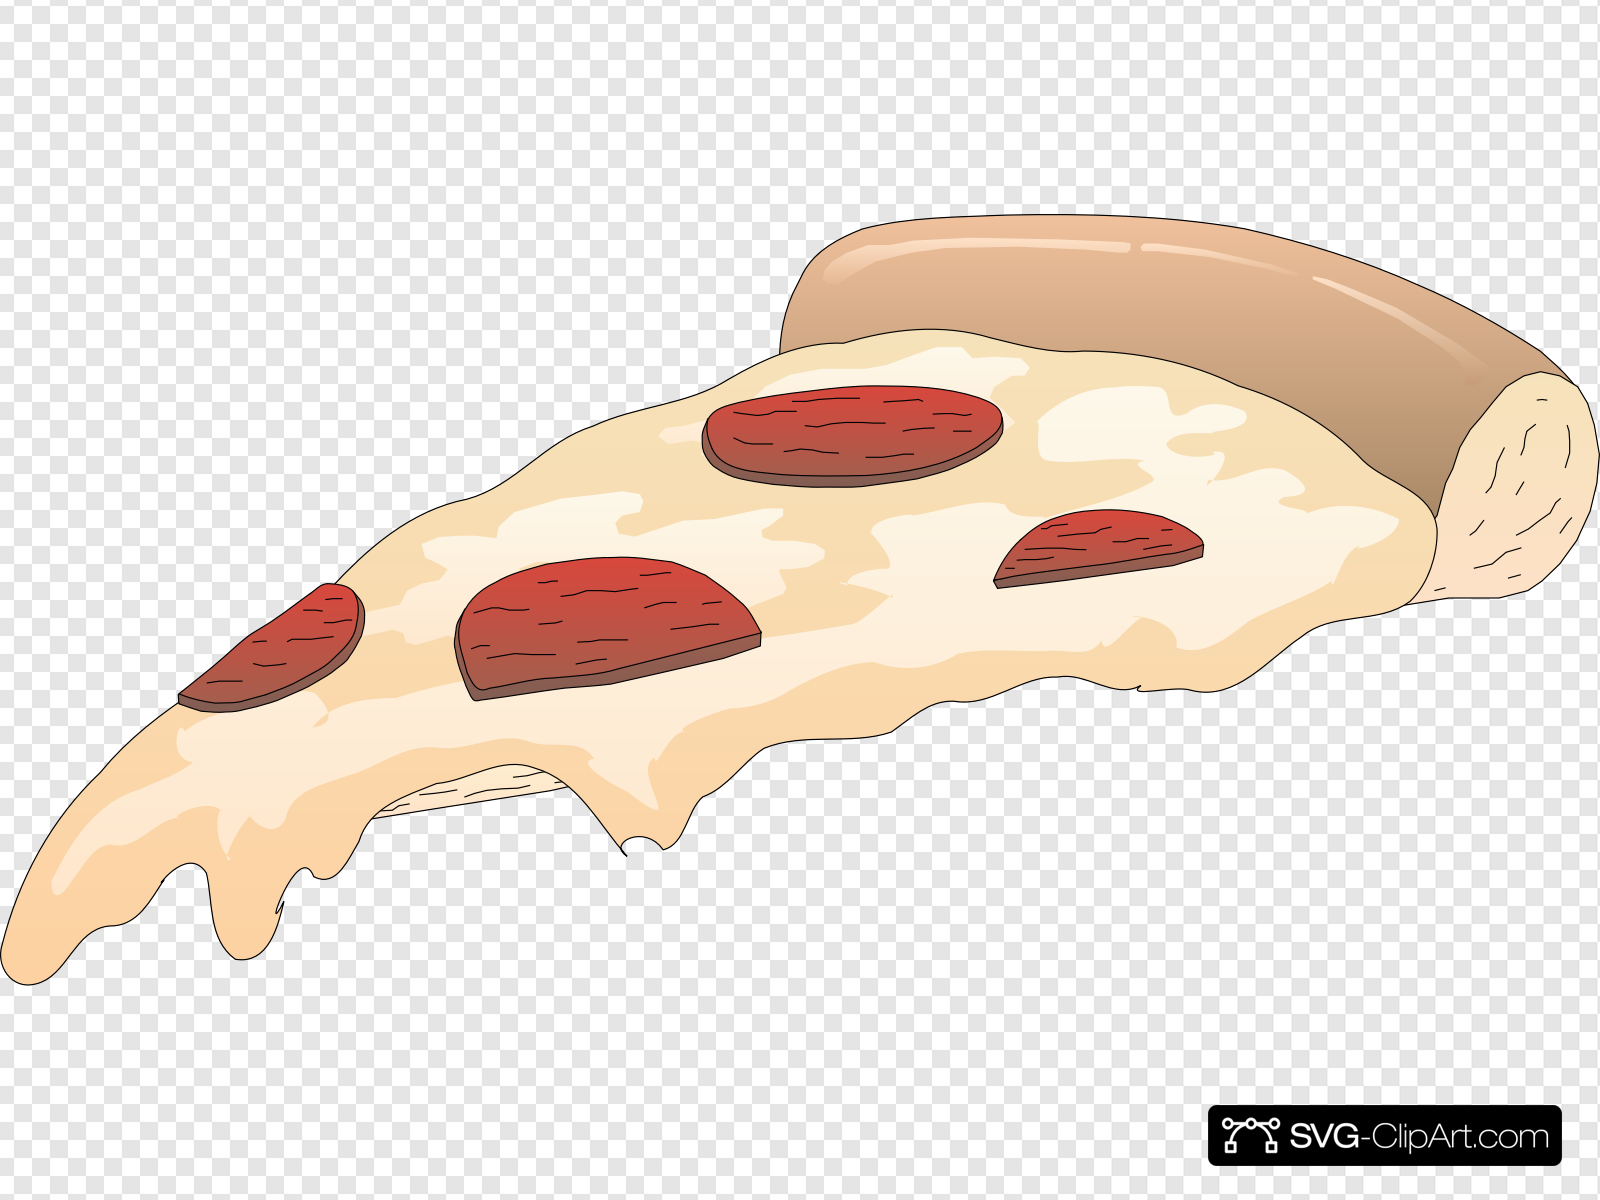 Pepperoni Pizza Slice Clip art, Icon and SVG